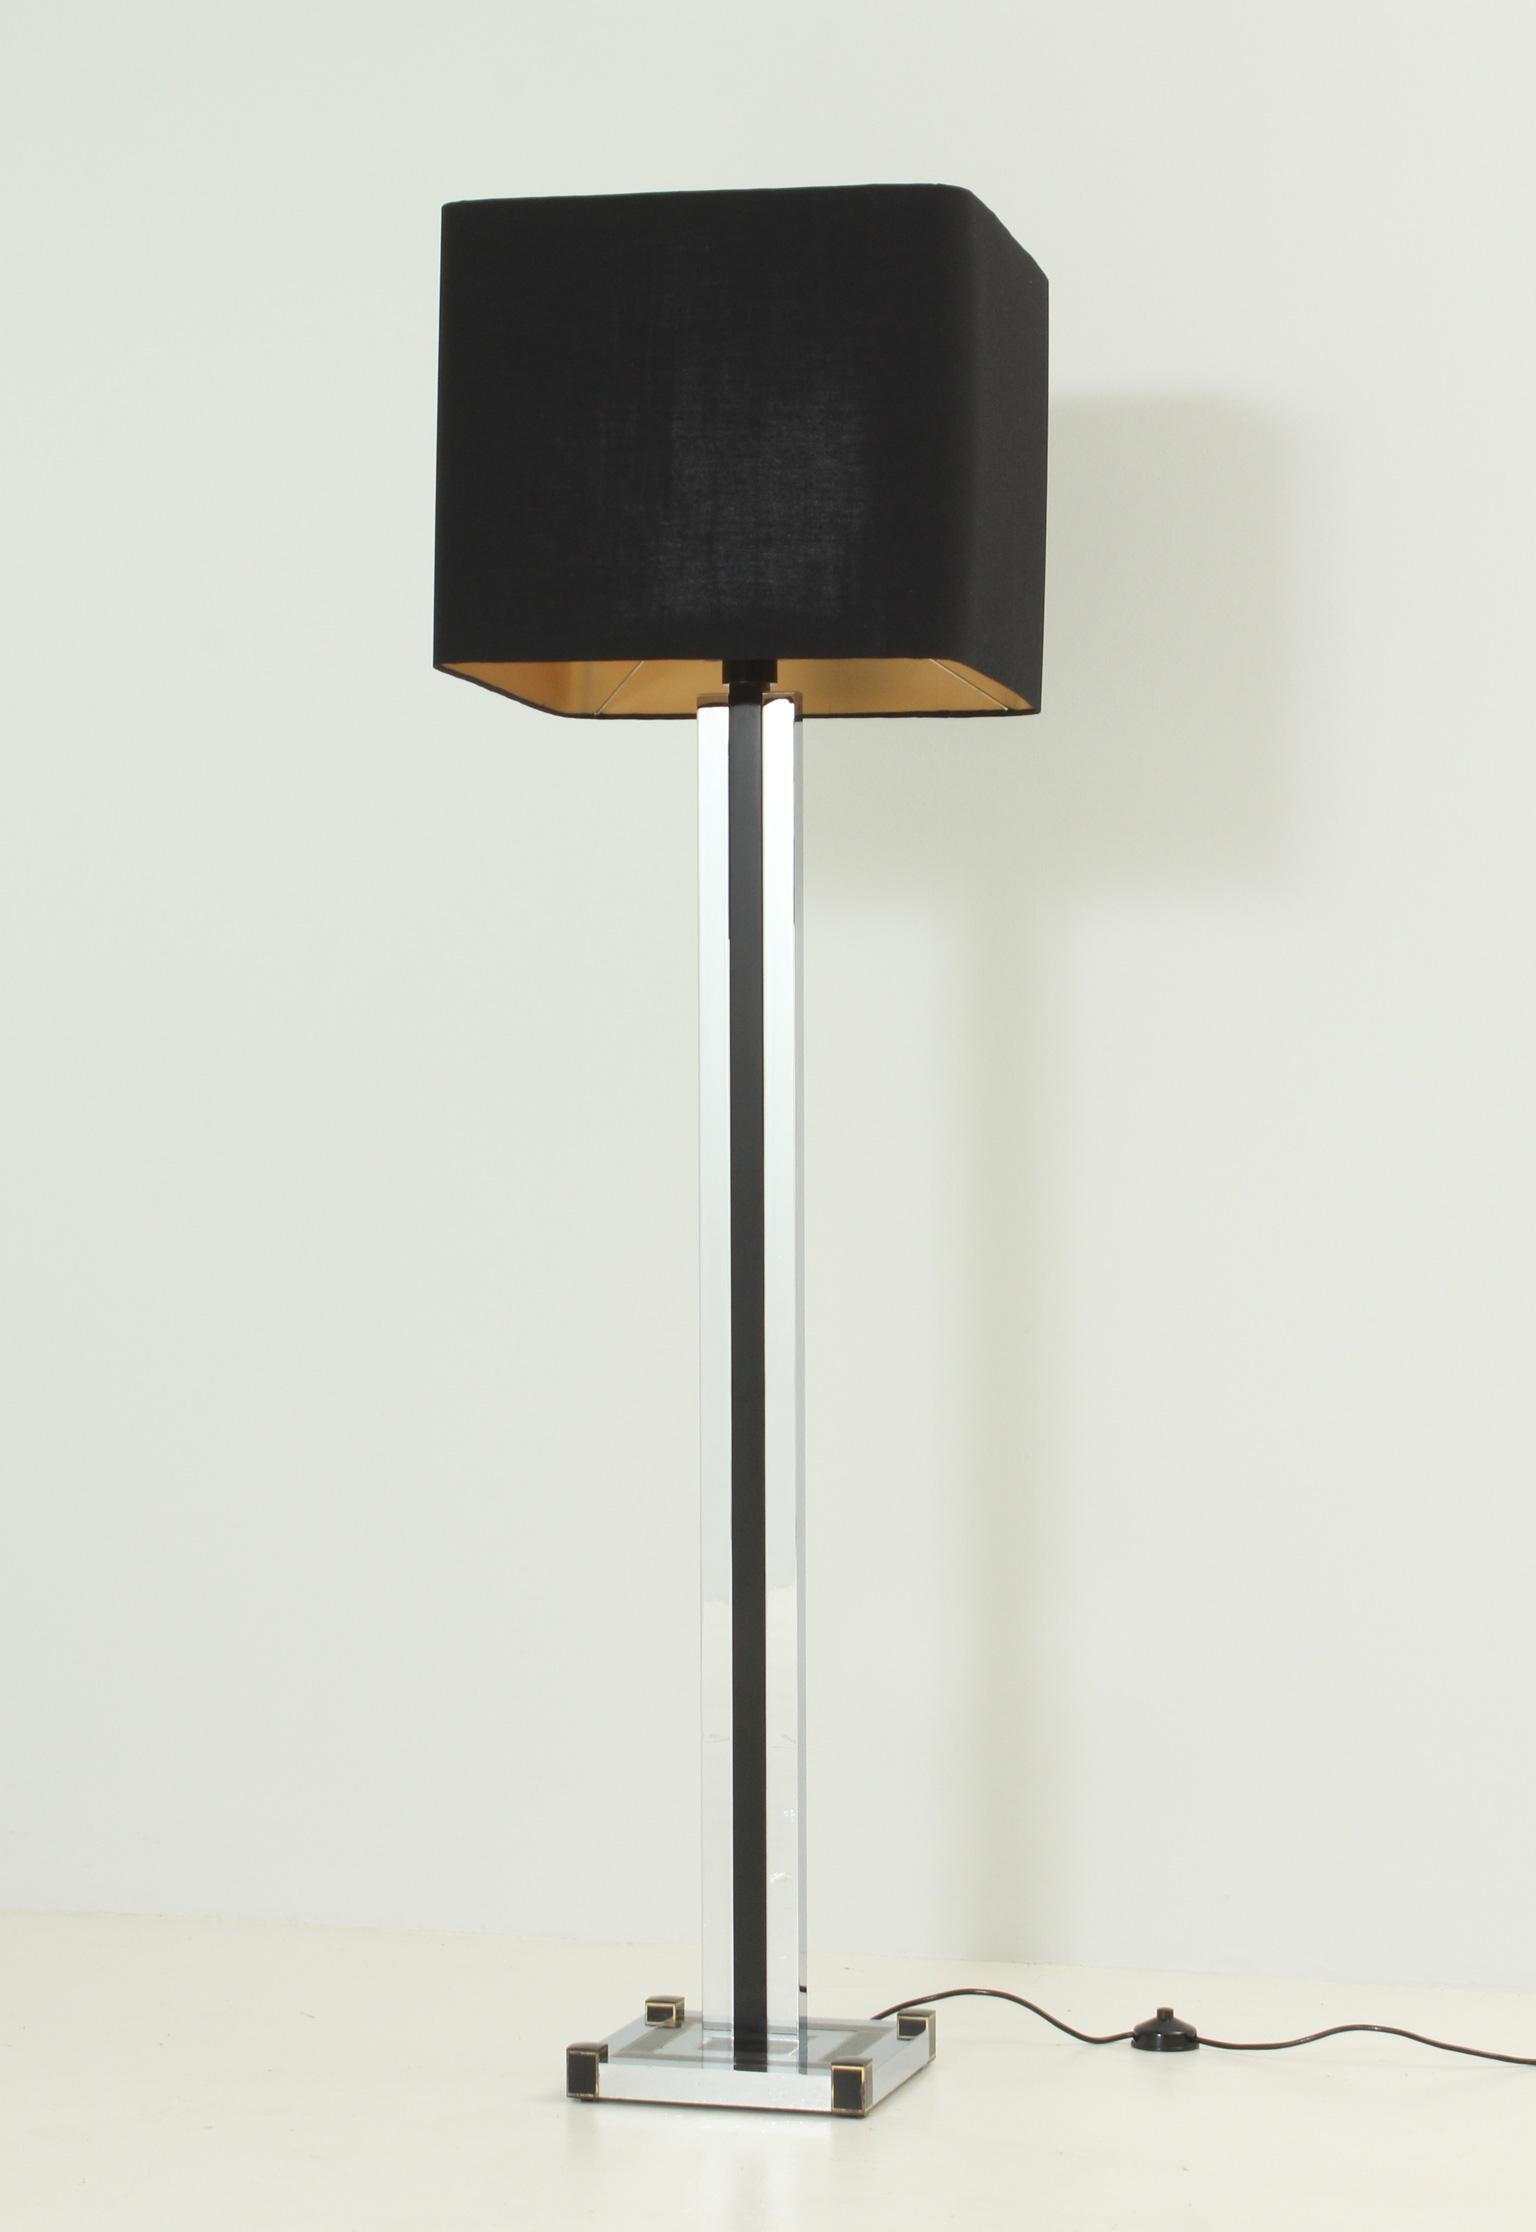 Stehleuchte, entworfen in den 1970er Jahren von Lumica, Spanien. Sockel aus verchromtem Metall, Messing und lackiertem Metall, der drei Glühbirnen und einen quadratischen Schirm mit neuem Stoff trägt.